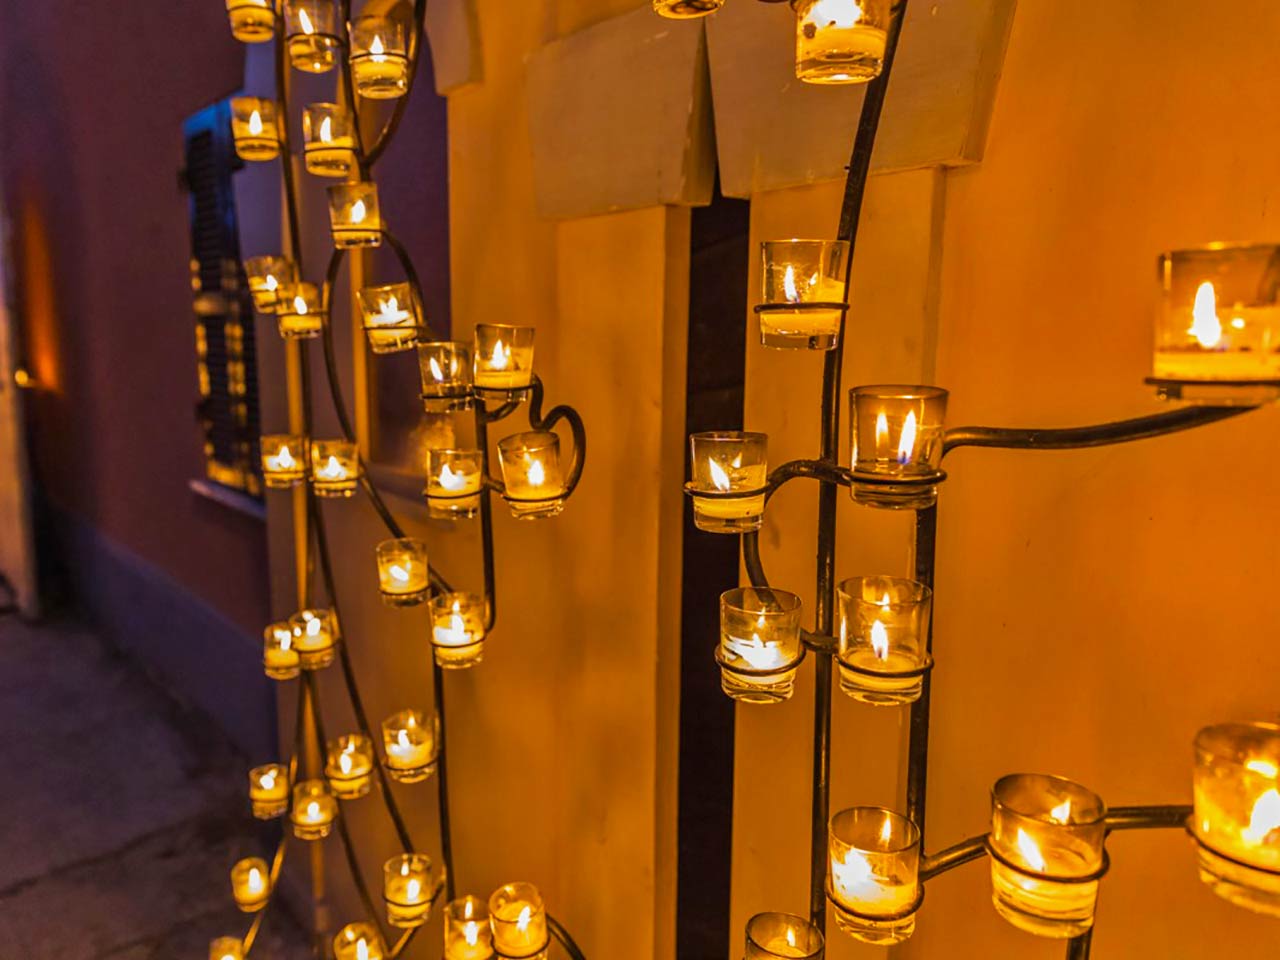 Due volte al giorno le luci artificiali si spengono e restano le candele a illuminare il borgo di Candelara - Candele a Candelara con lo sconto del Club.